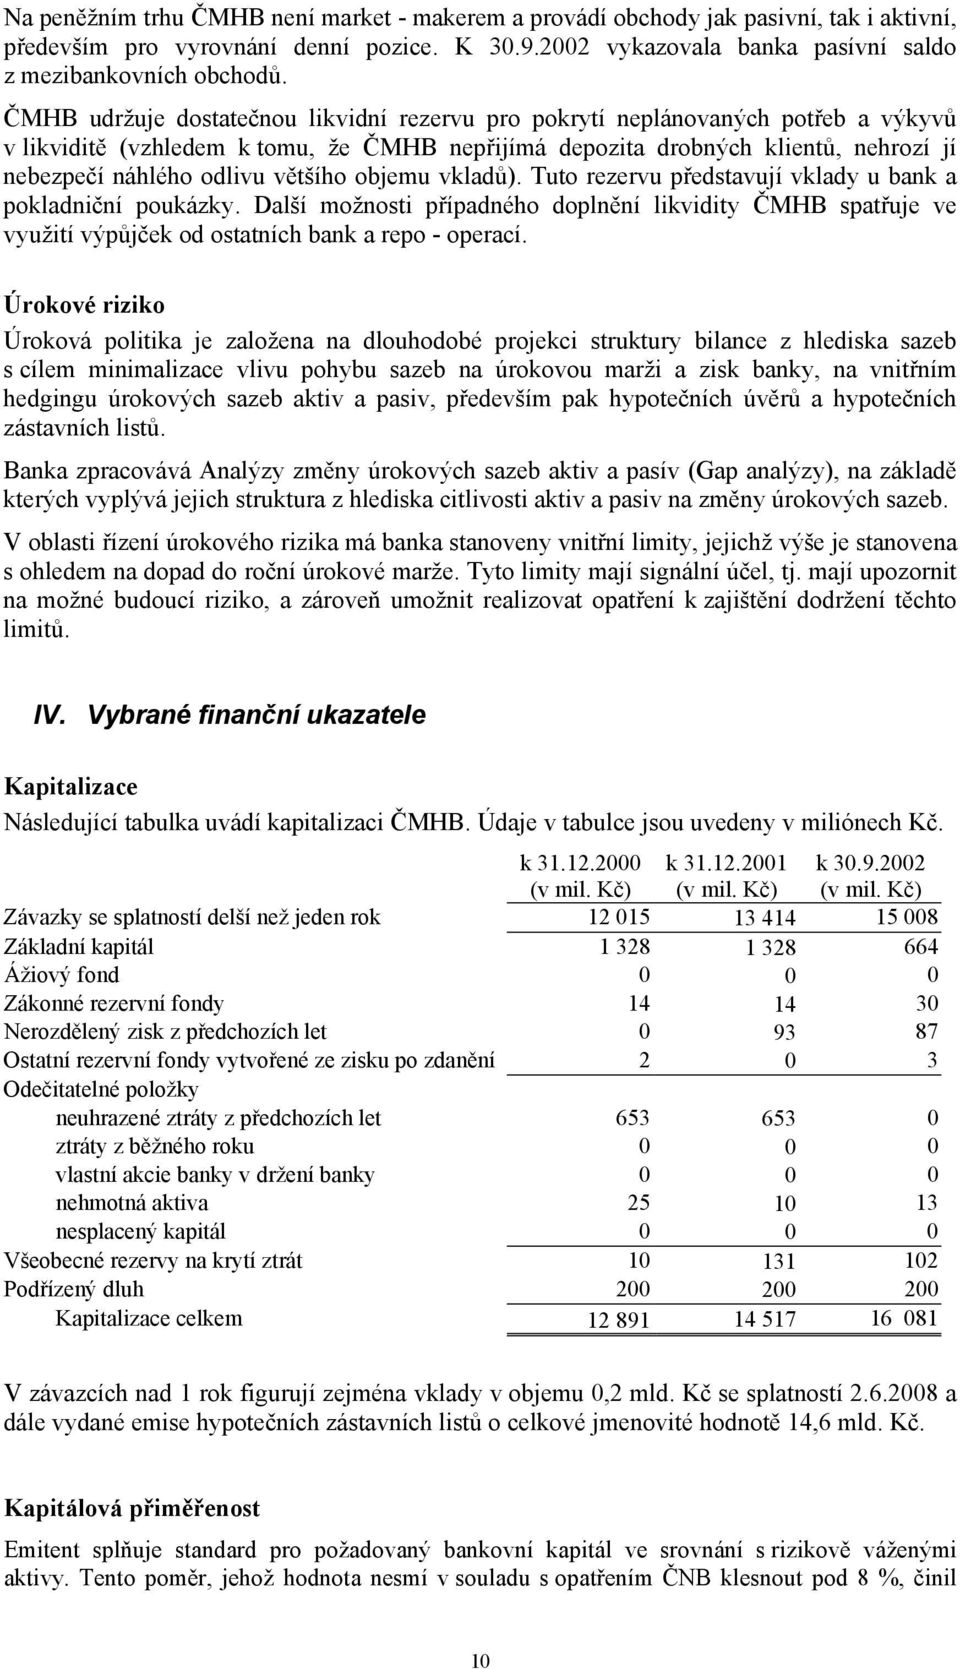 ČESKOMORAVSKÁ HYPOTEČNÍ BANKA a.s. - PDF Stažení zdarma